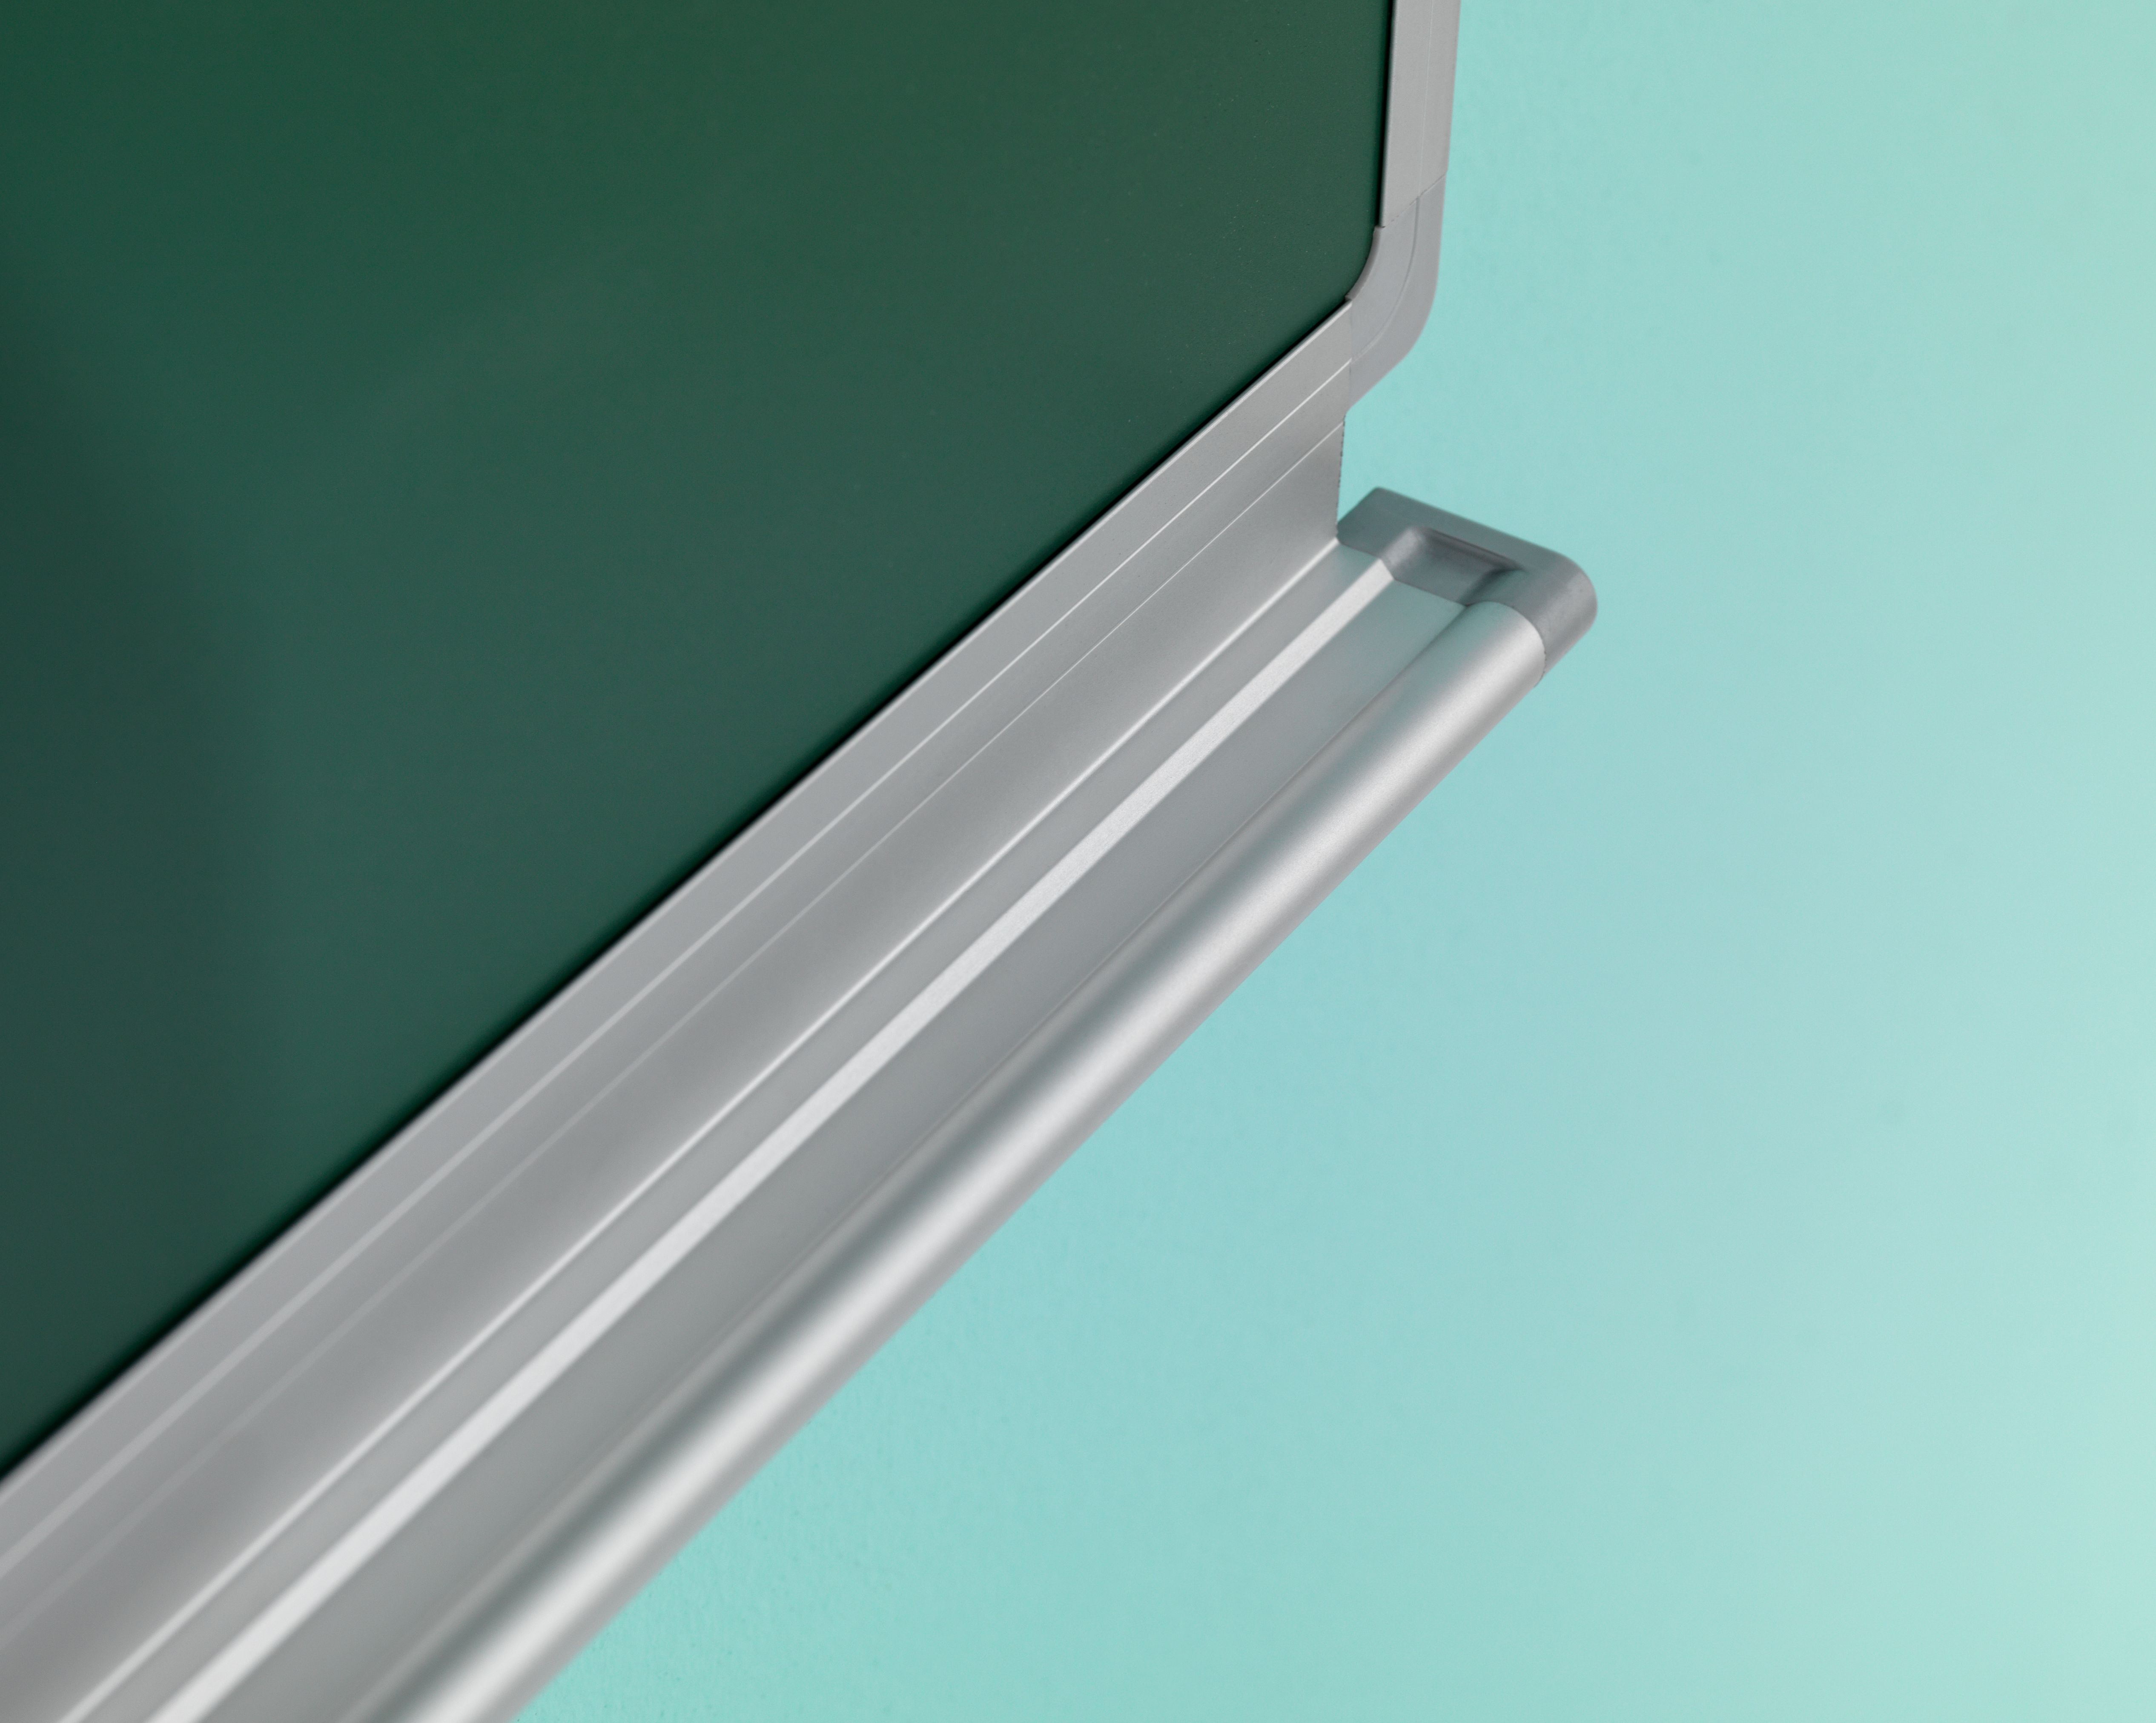 Schoolbord, krijt groen, Softline 19 mm - 100x200 cm